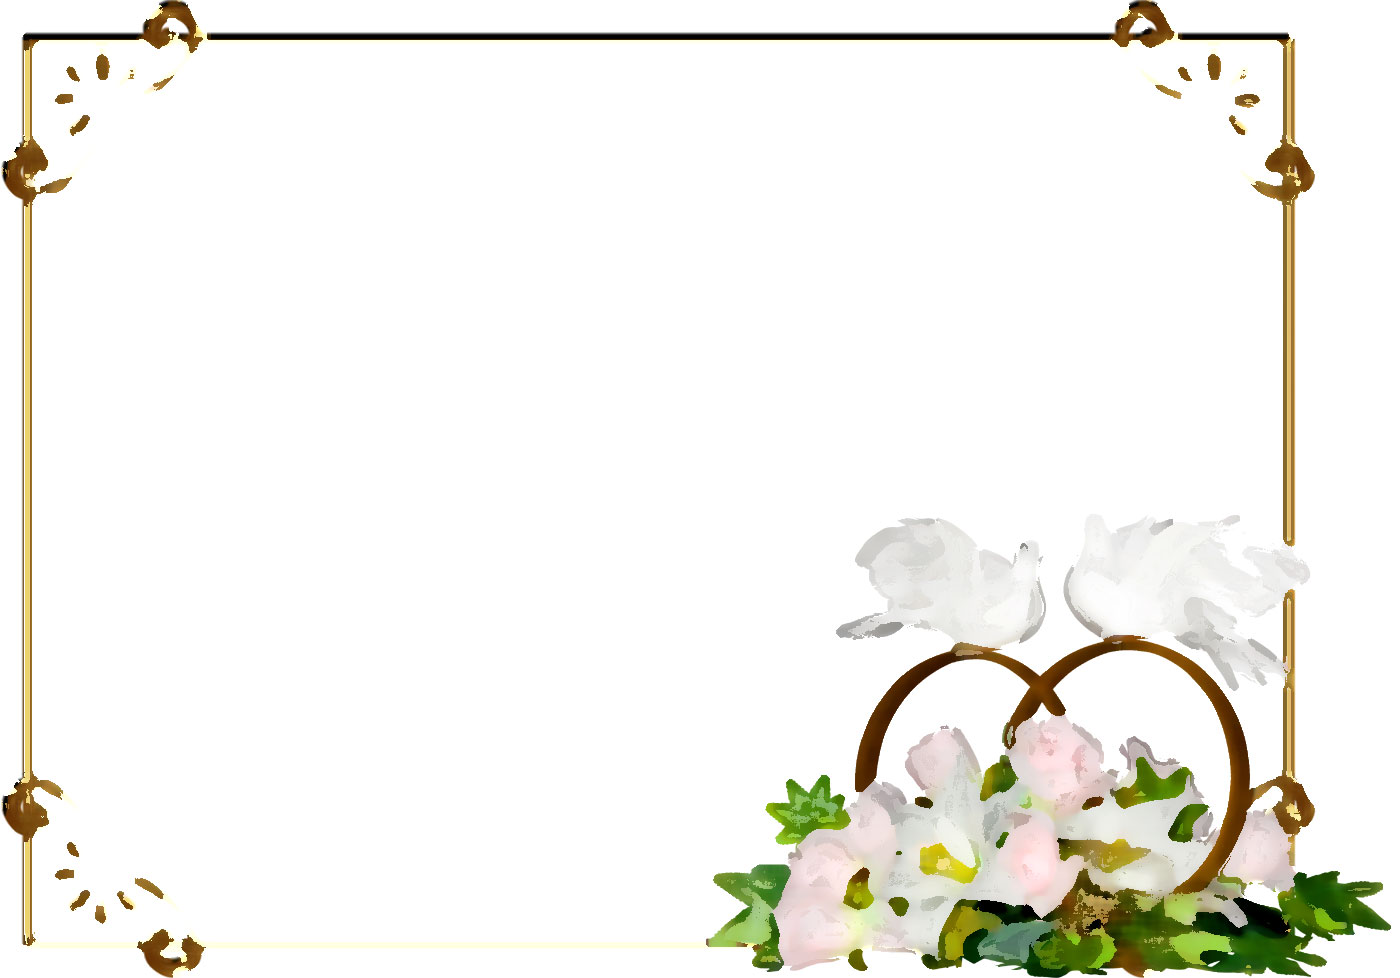 百合 ゆり の花の画像 イラスト フリー素材 No 132 バラ ユリ 白い鳥